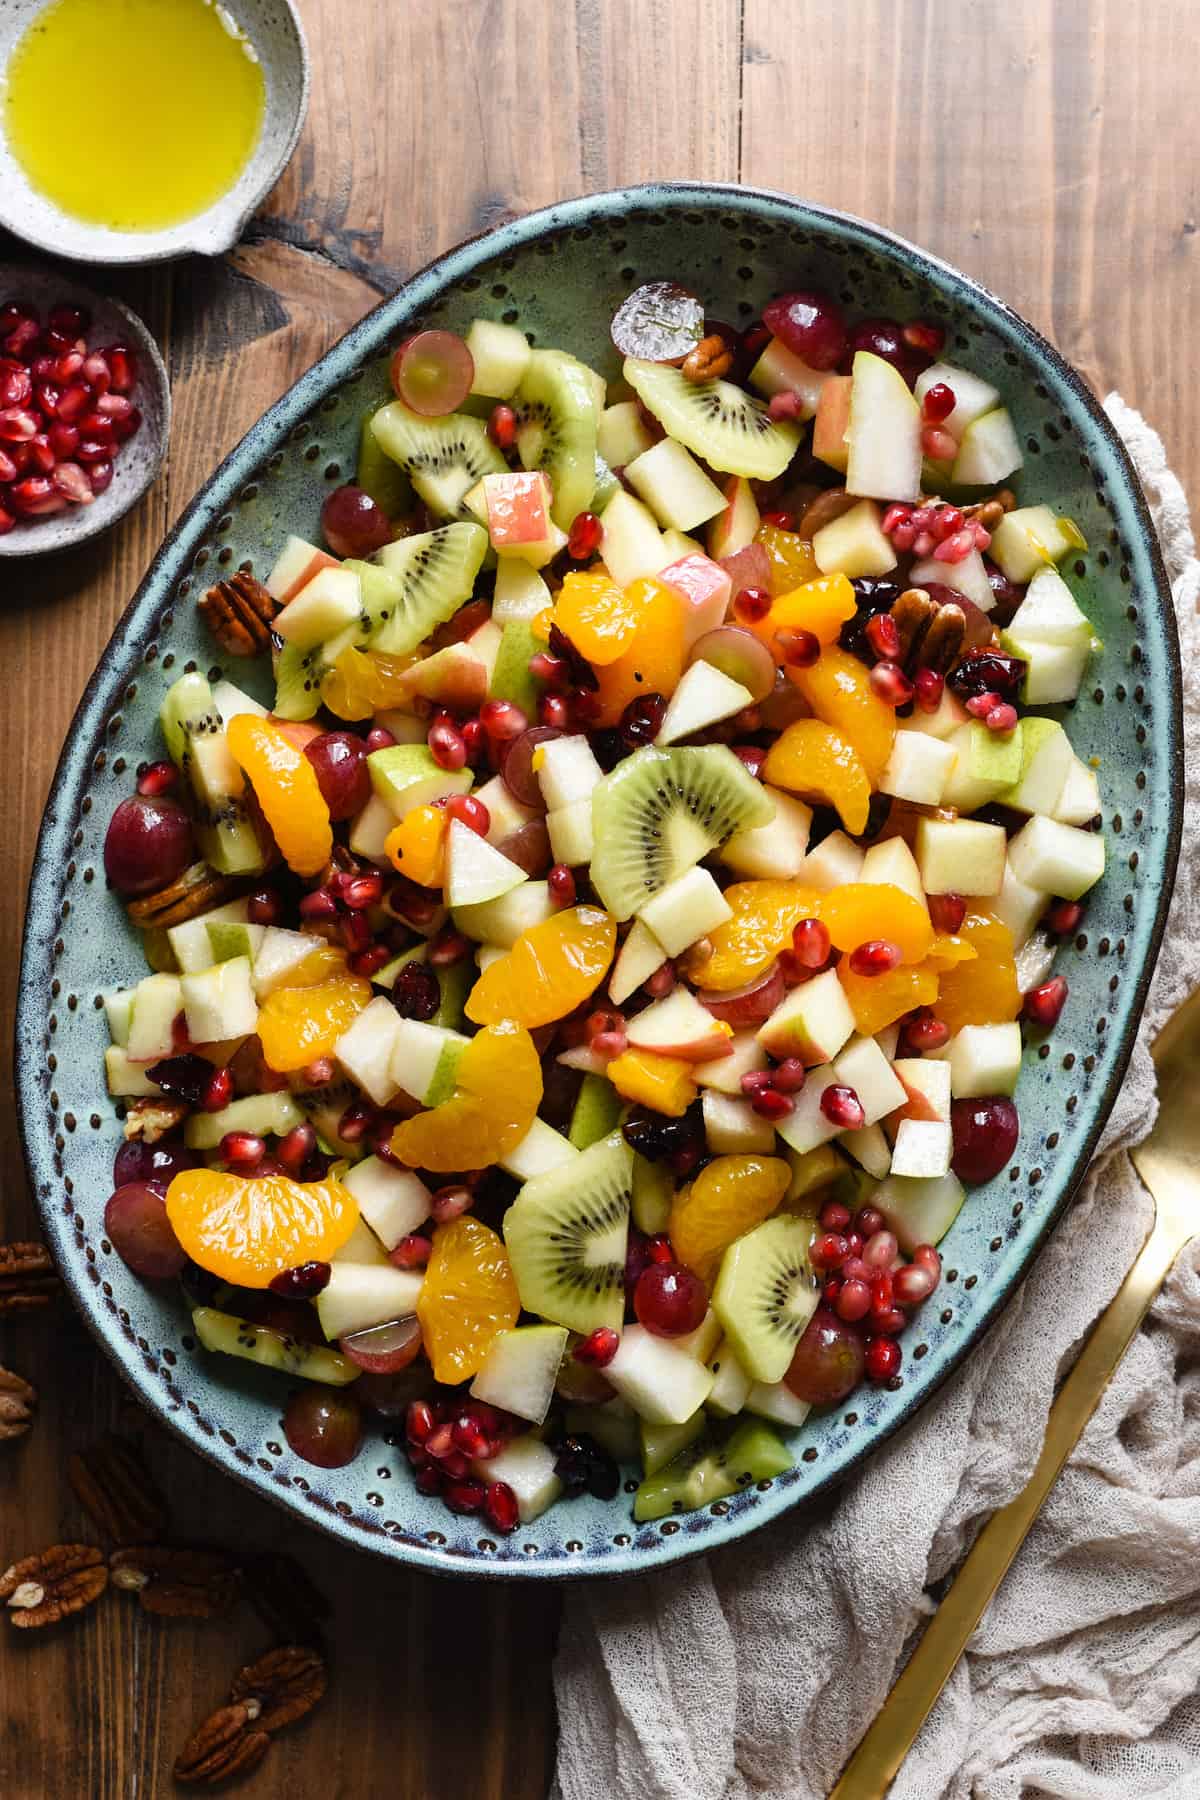 https://foxeslovelemons.com/wp-content/uploads/2021/10/Thanksgiving-Fruit-Salad-2.jpg